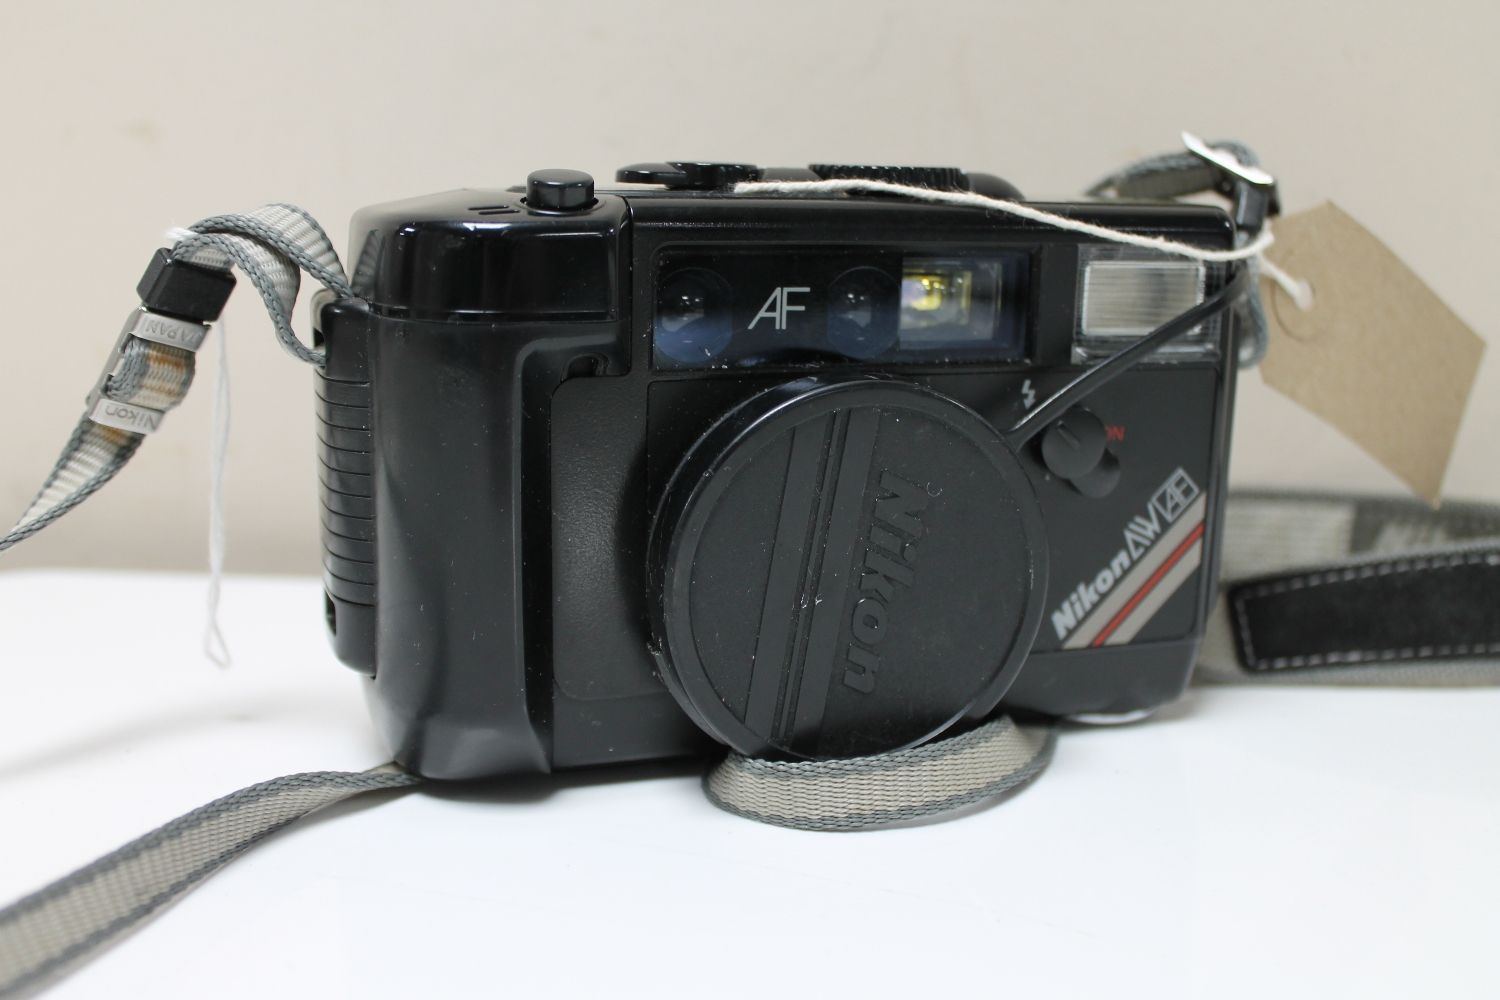 A Nikon L35AWAF camera with Nikon 35mm lens